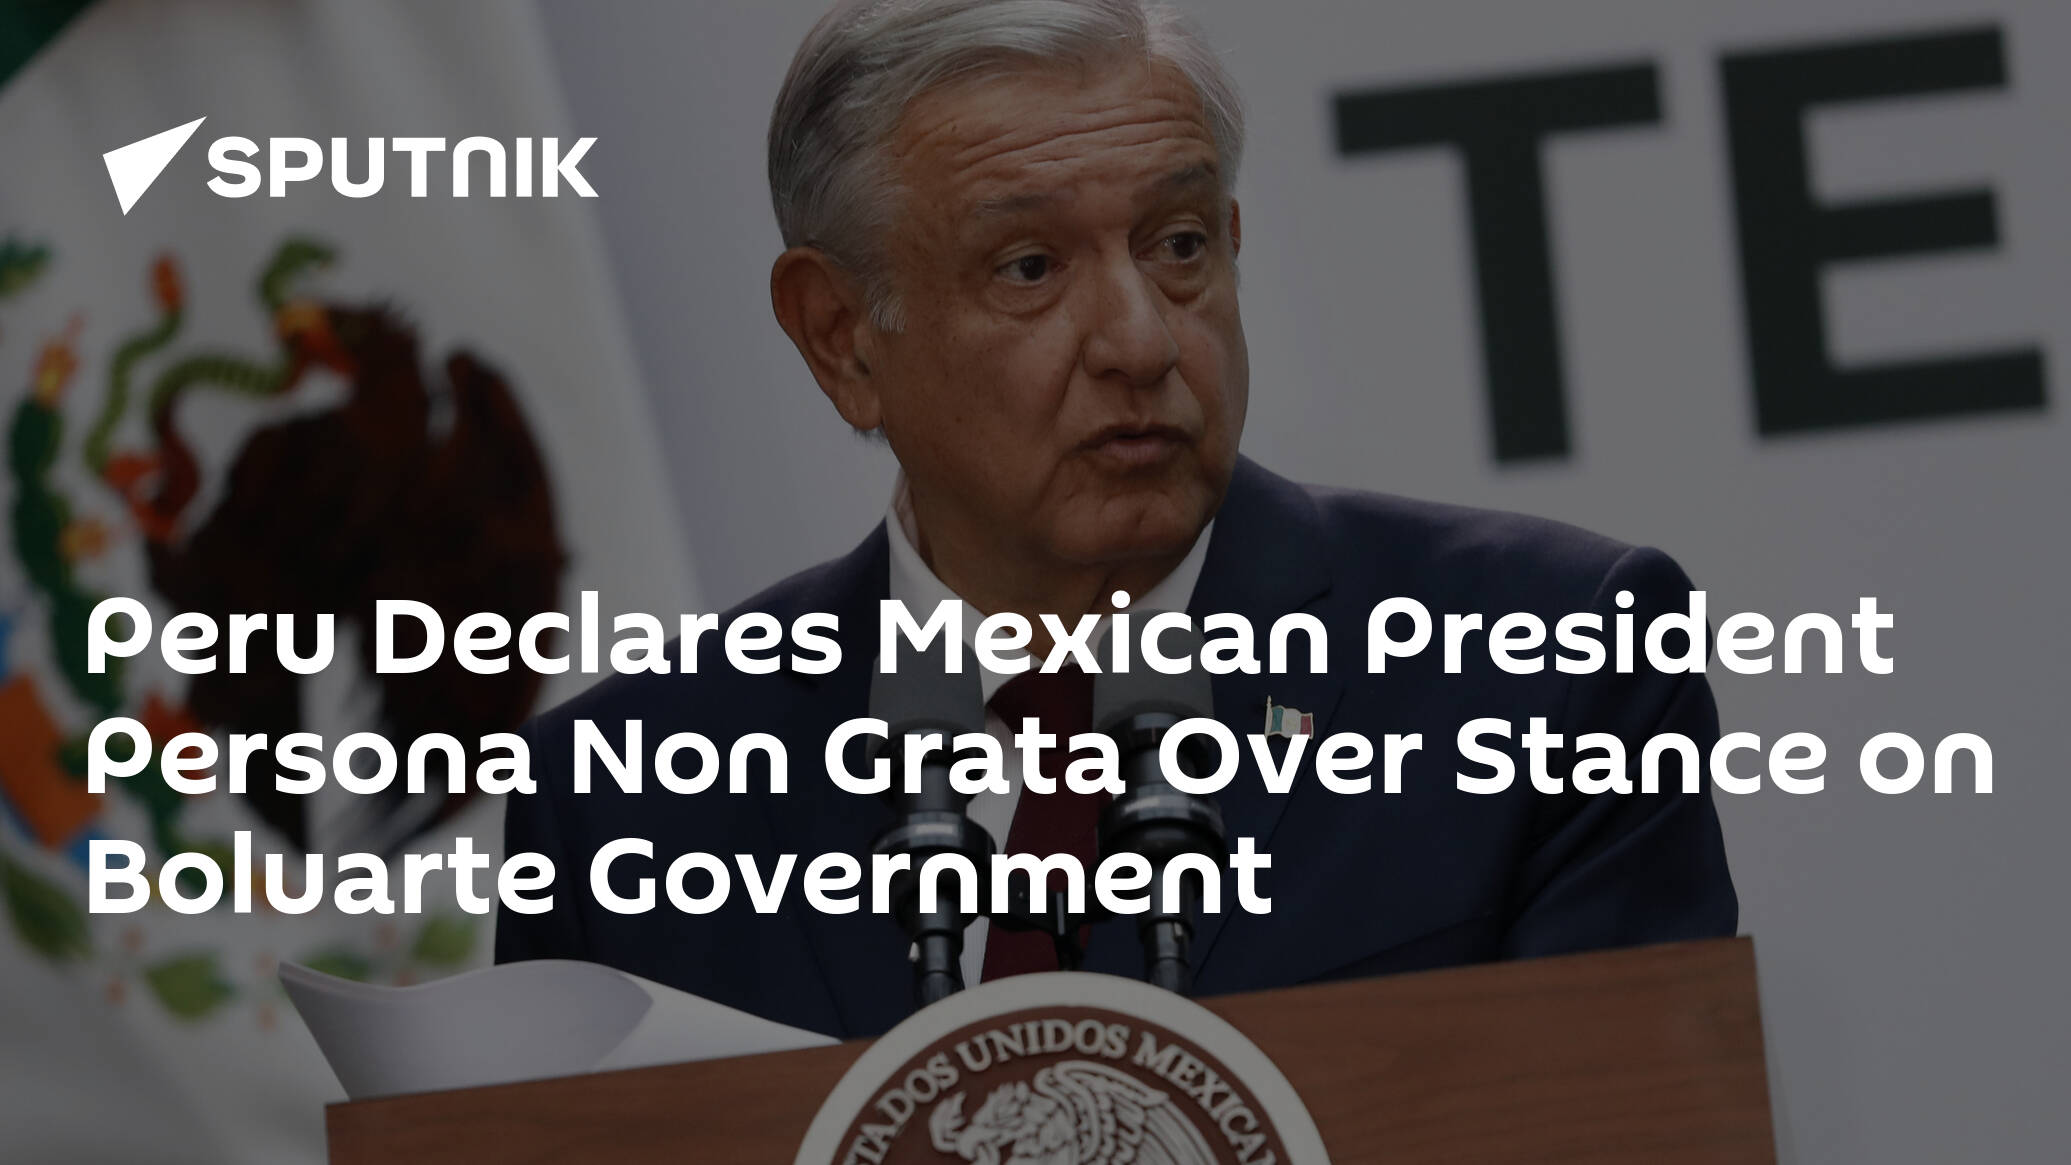 Peru Declares Mexican President Persona Non Grata Over Stance on Boluarte Government